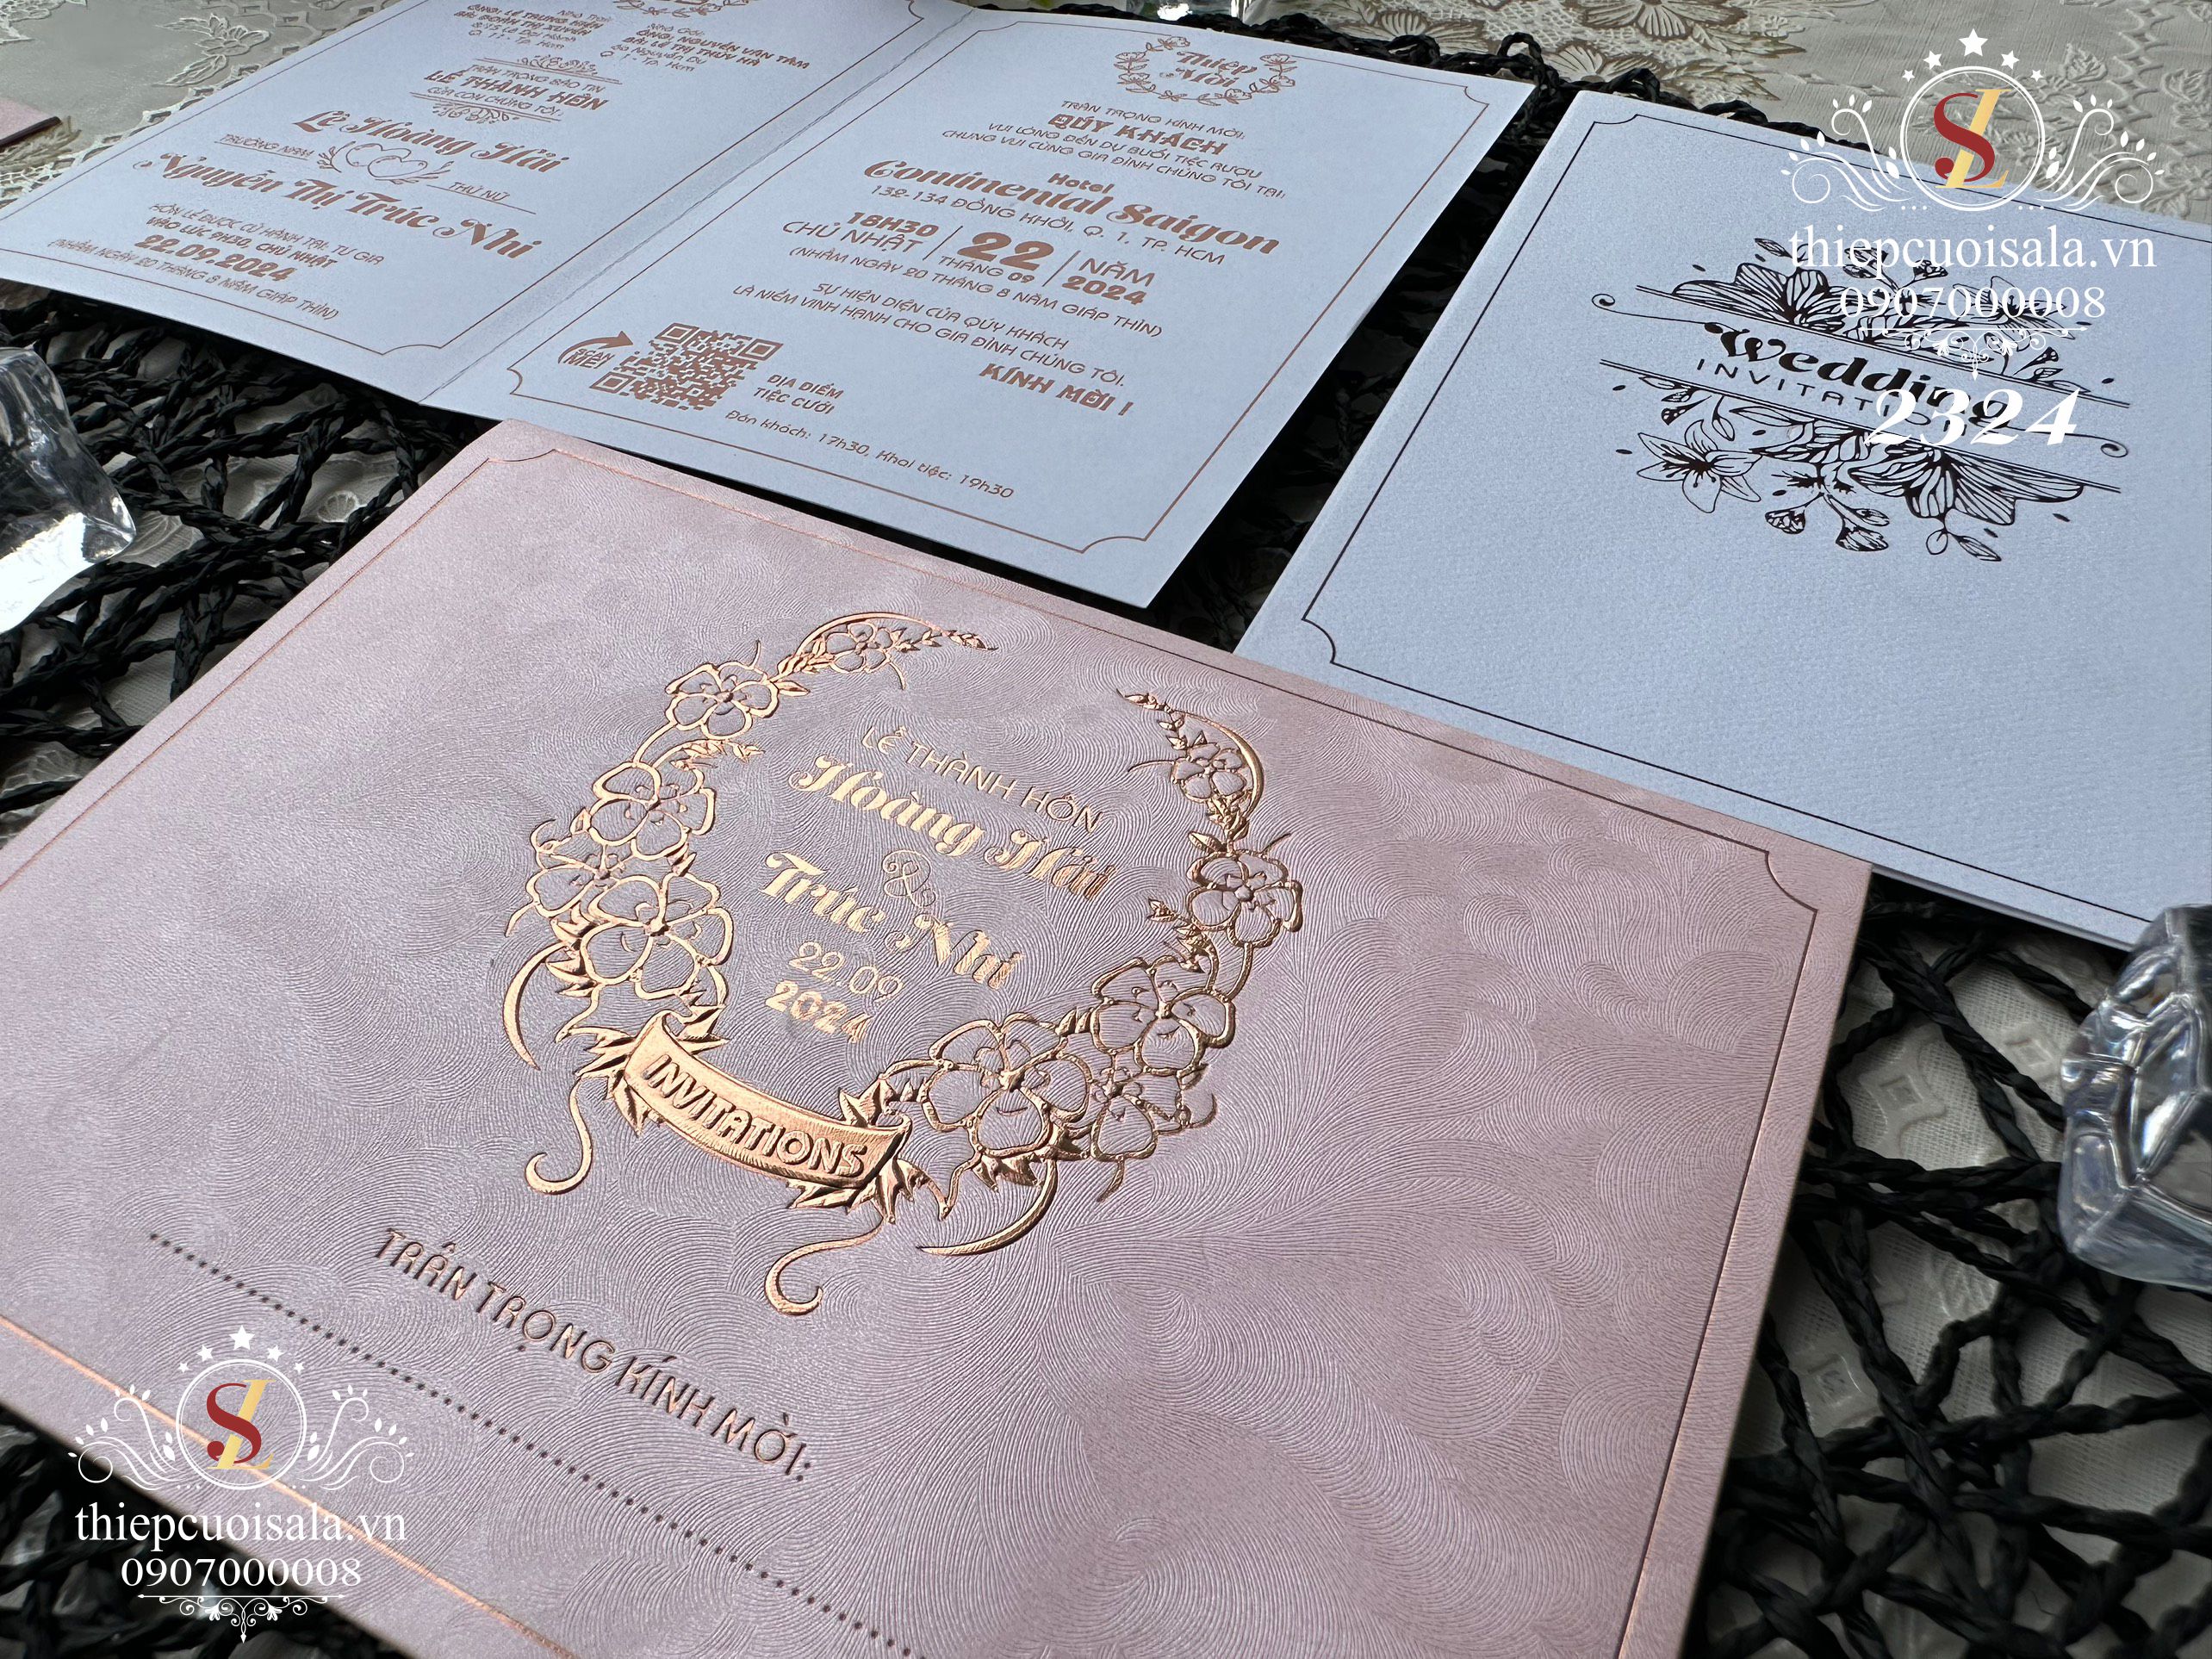 Thiệp cưới màu hồng giấy mỹ thuật